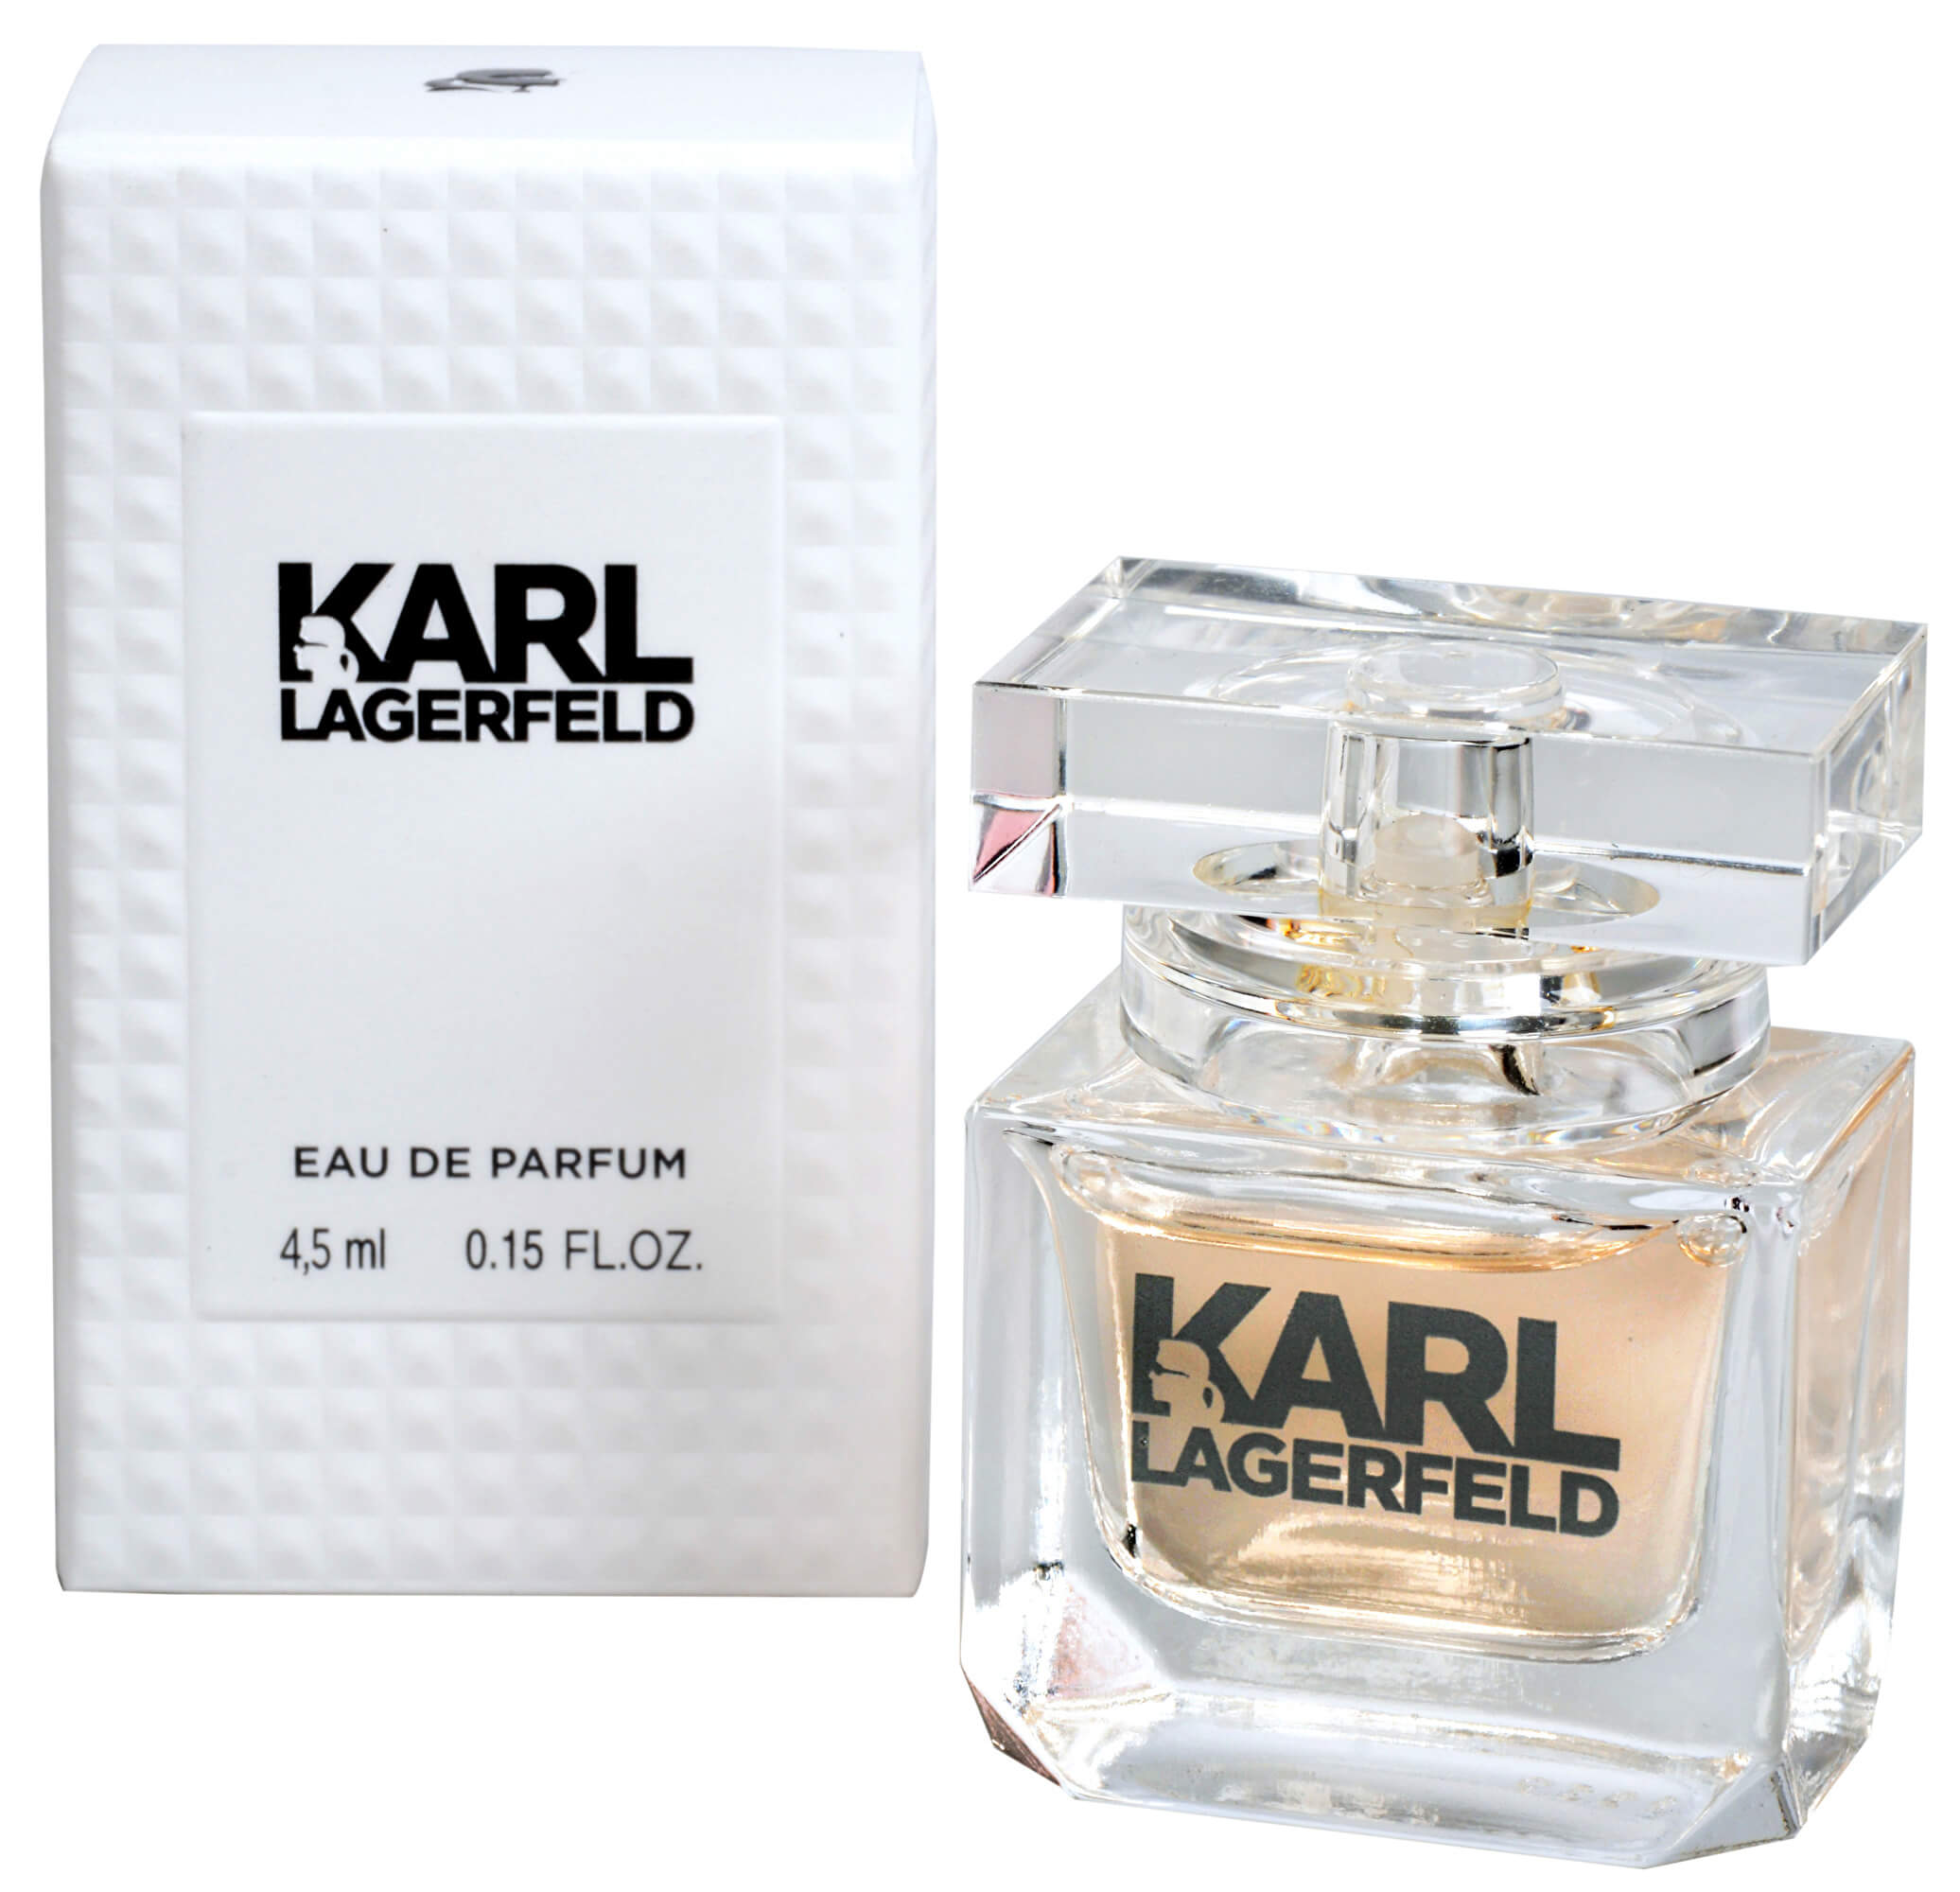 Karl Lagerfeld For Her - miniatúra EDP 4,5 ml